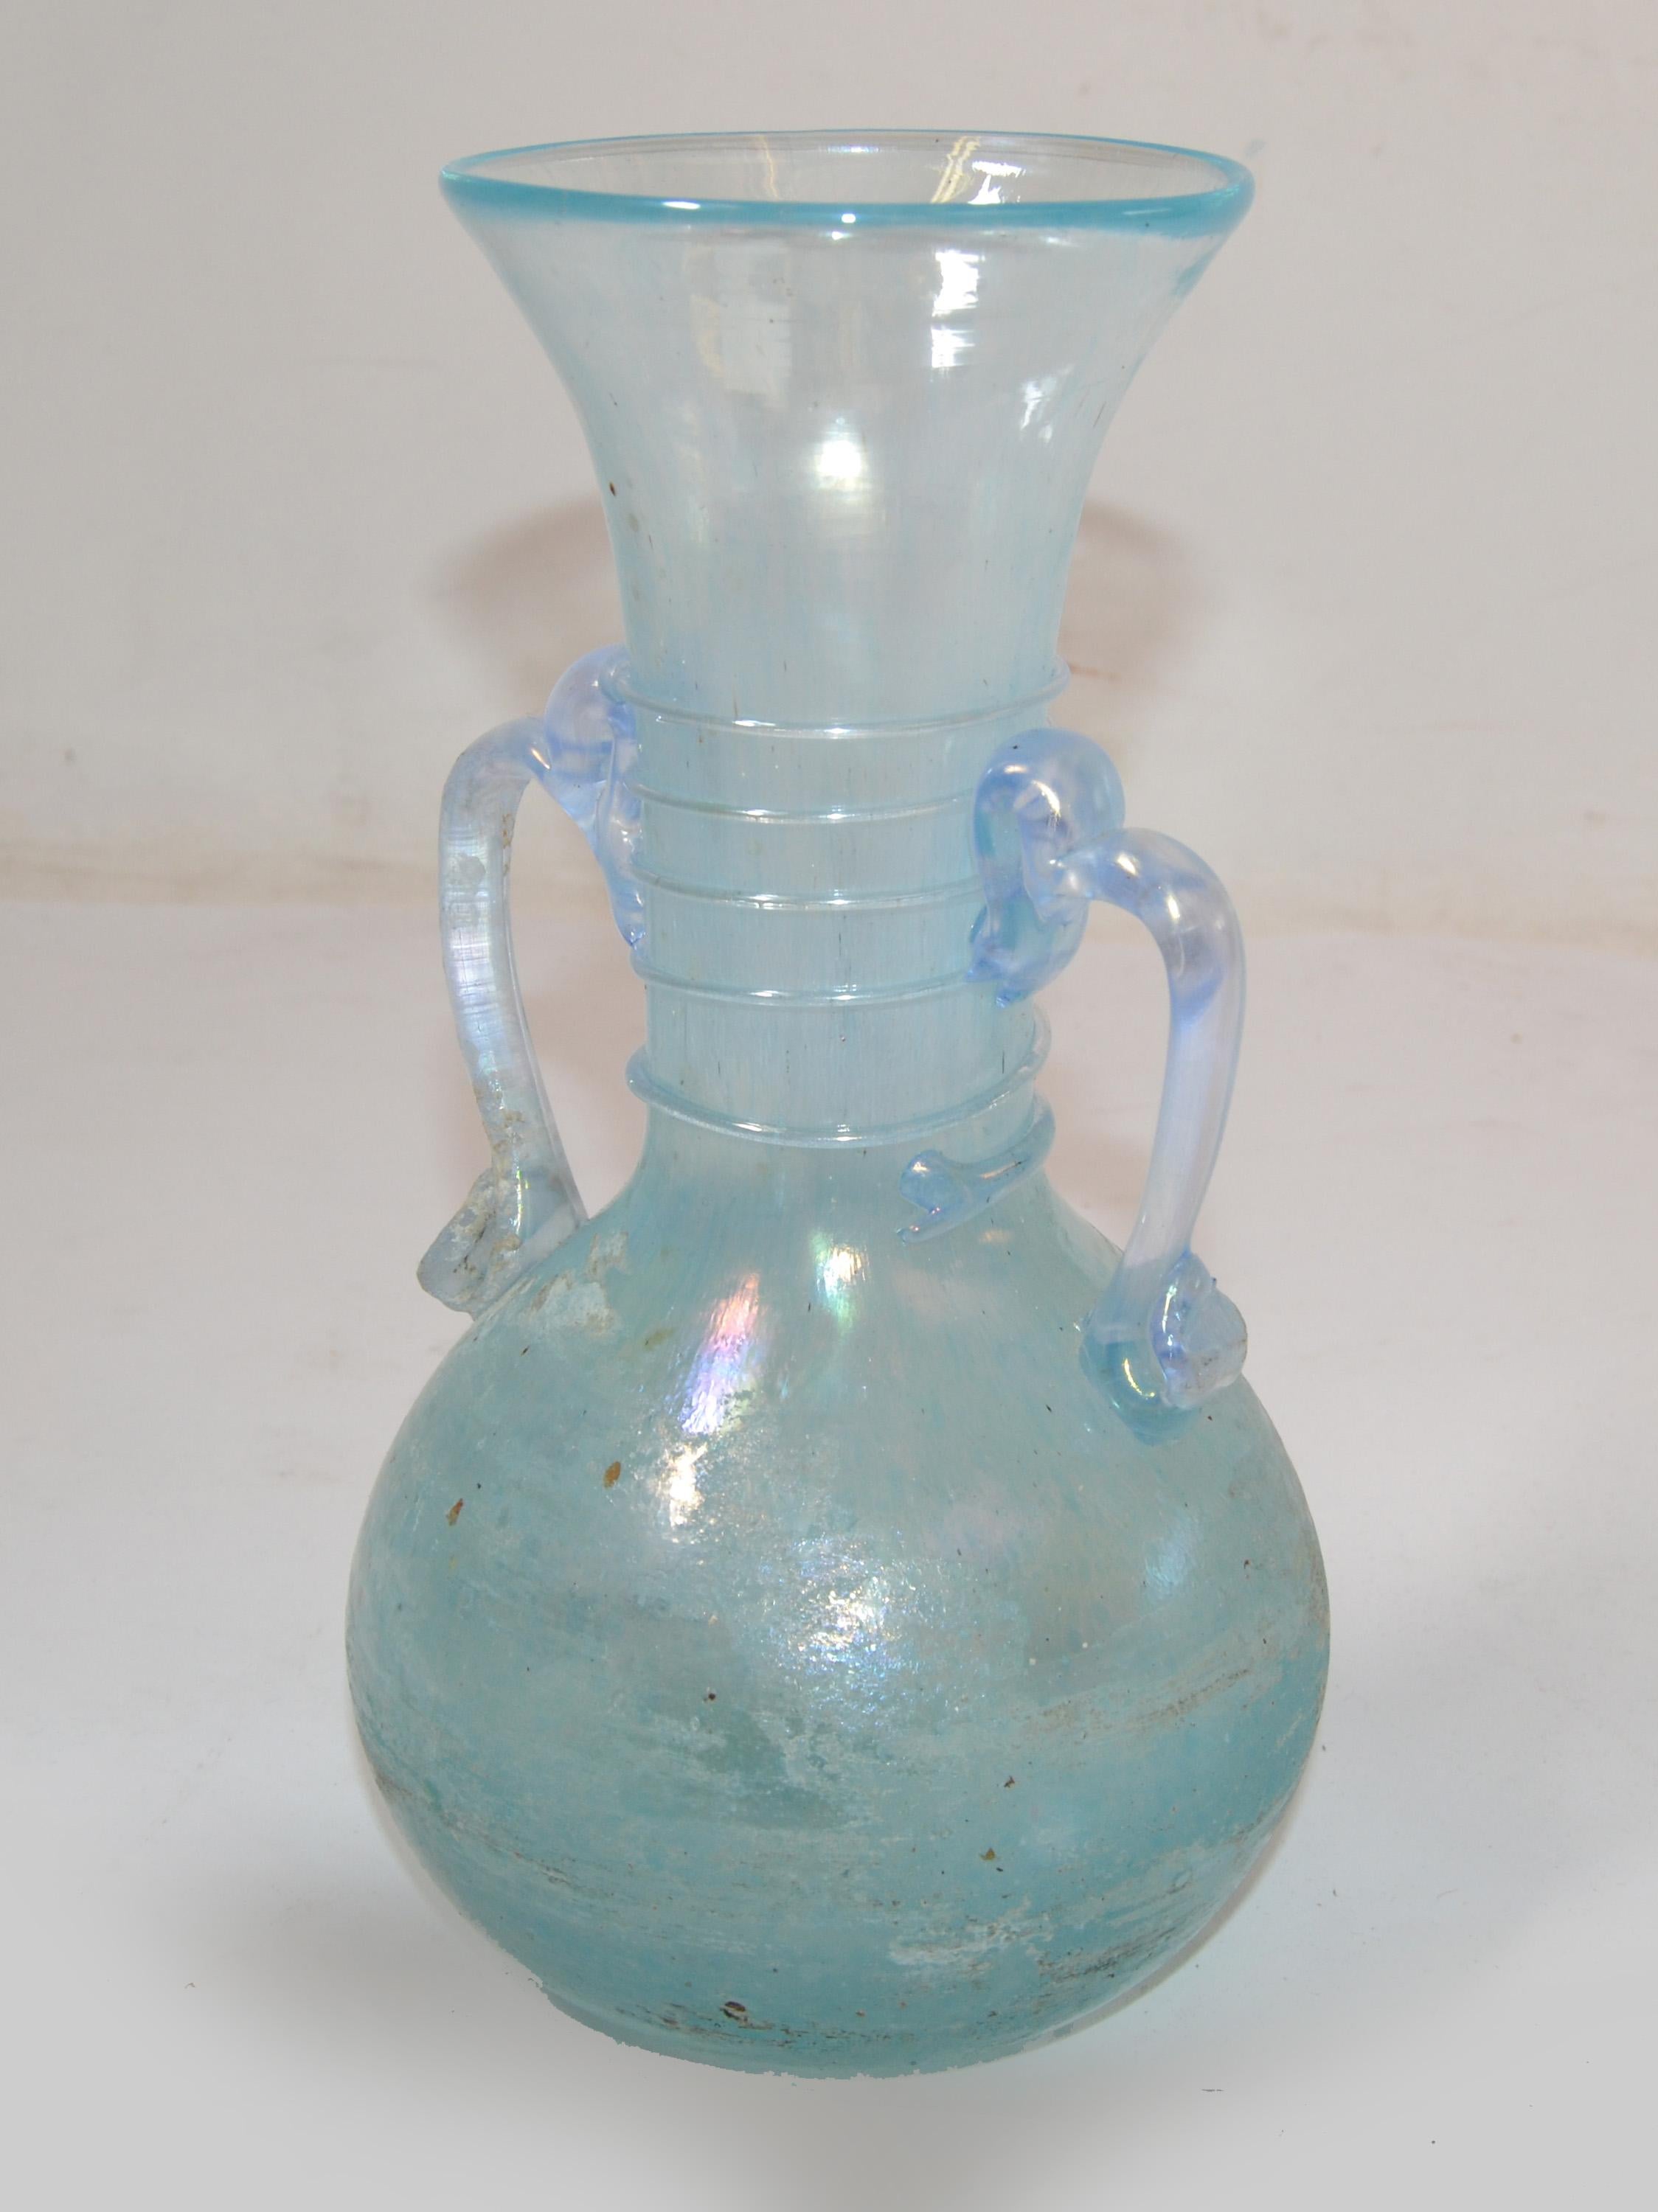 Murano Baby blau scavo Glas Murano Art Glas Knospe Vase, Gefäß, Dekanter Mid-Century Modern in Italien im Jahr 1980 gemacht.
Gekennzeichnet am Sockel: Made in Murano, Italy.
Maße von Griff zu Griff: 6 Zoll.
Maße der Öffnung: 3.38 Zoll.